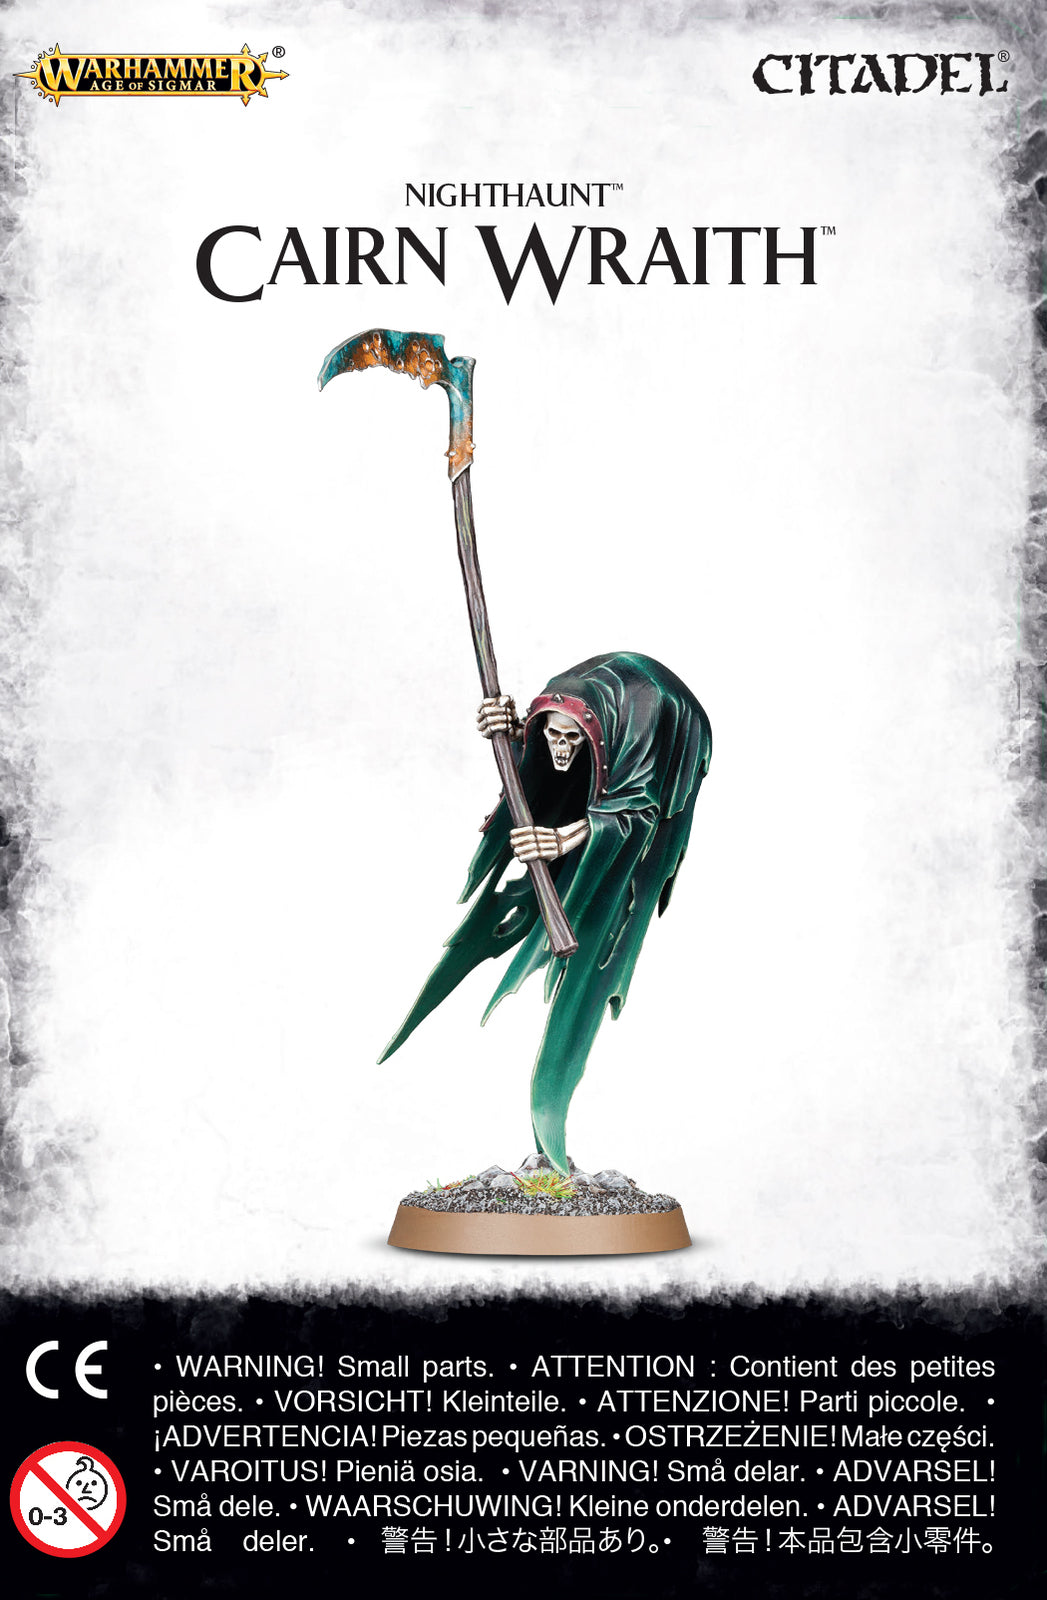 Cairn Wraith